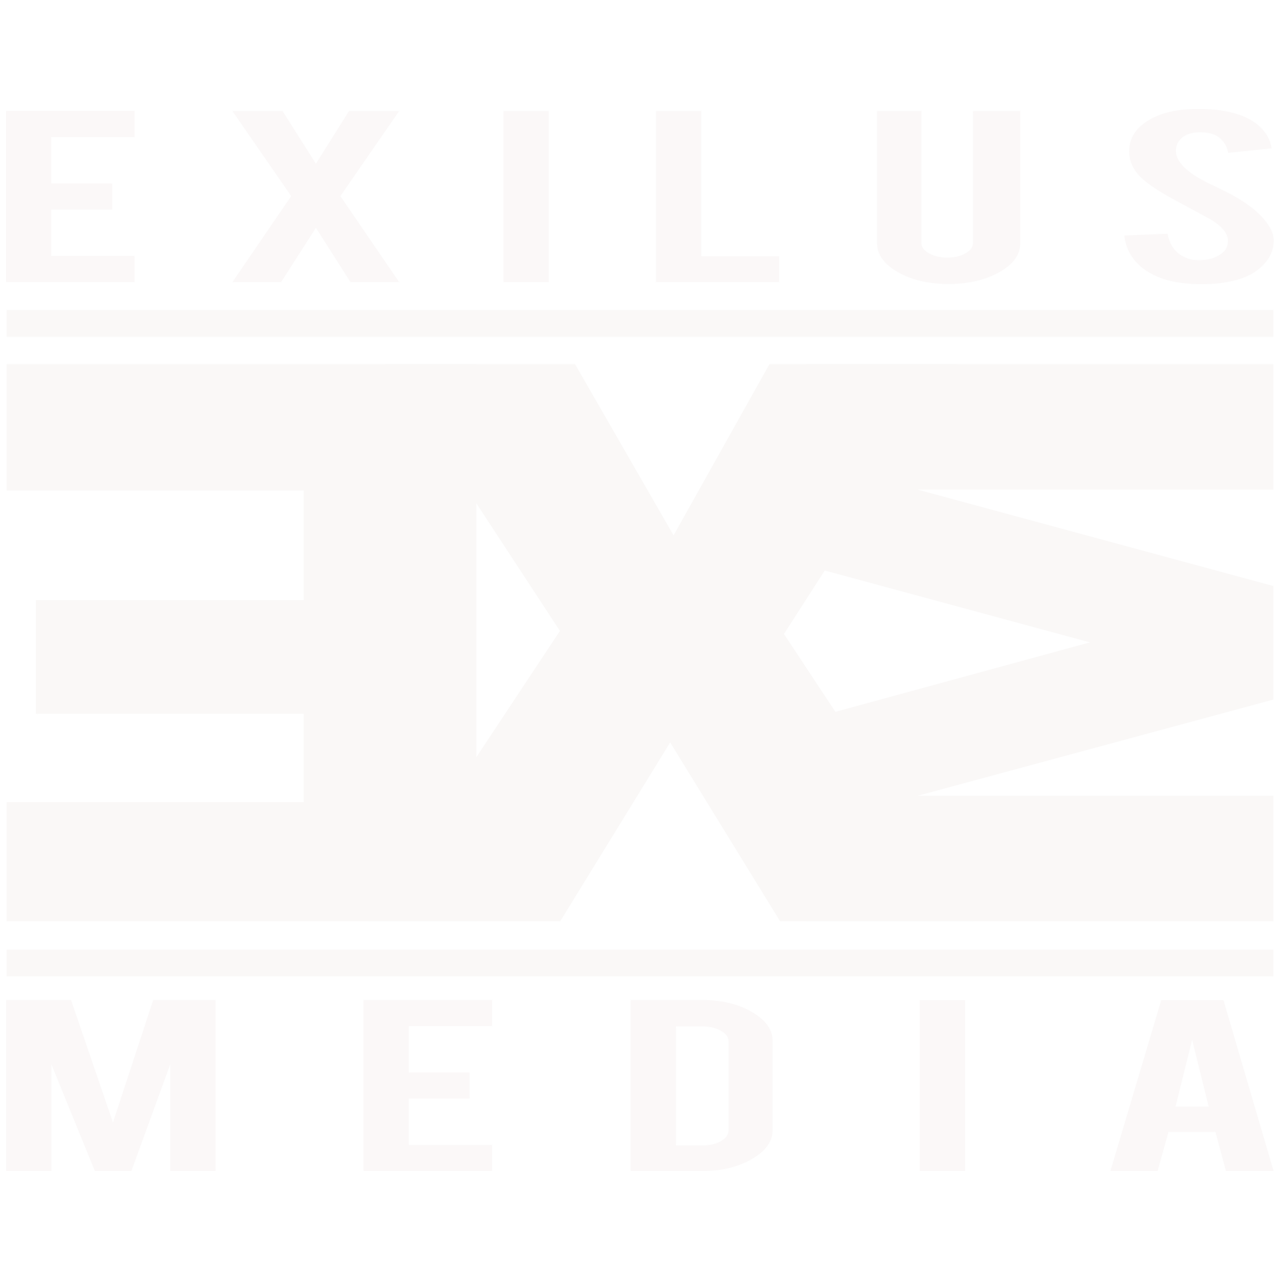 EXILUS MEDIA